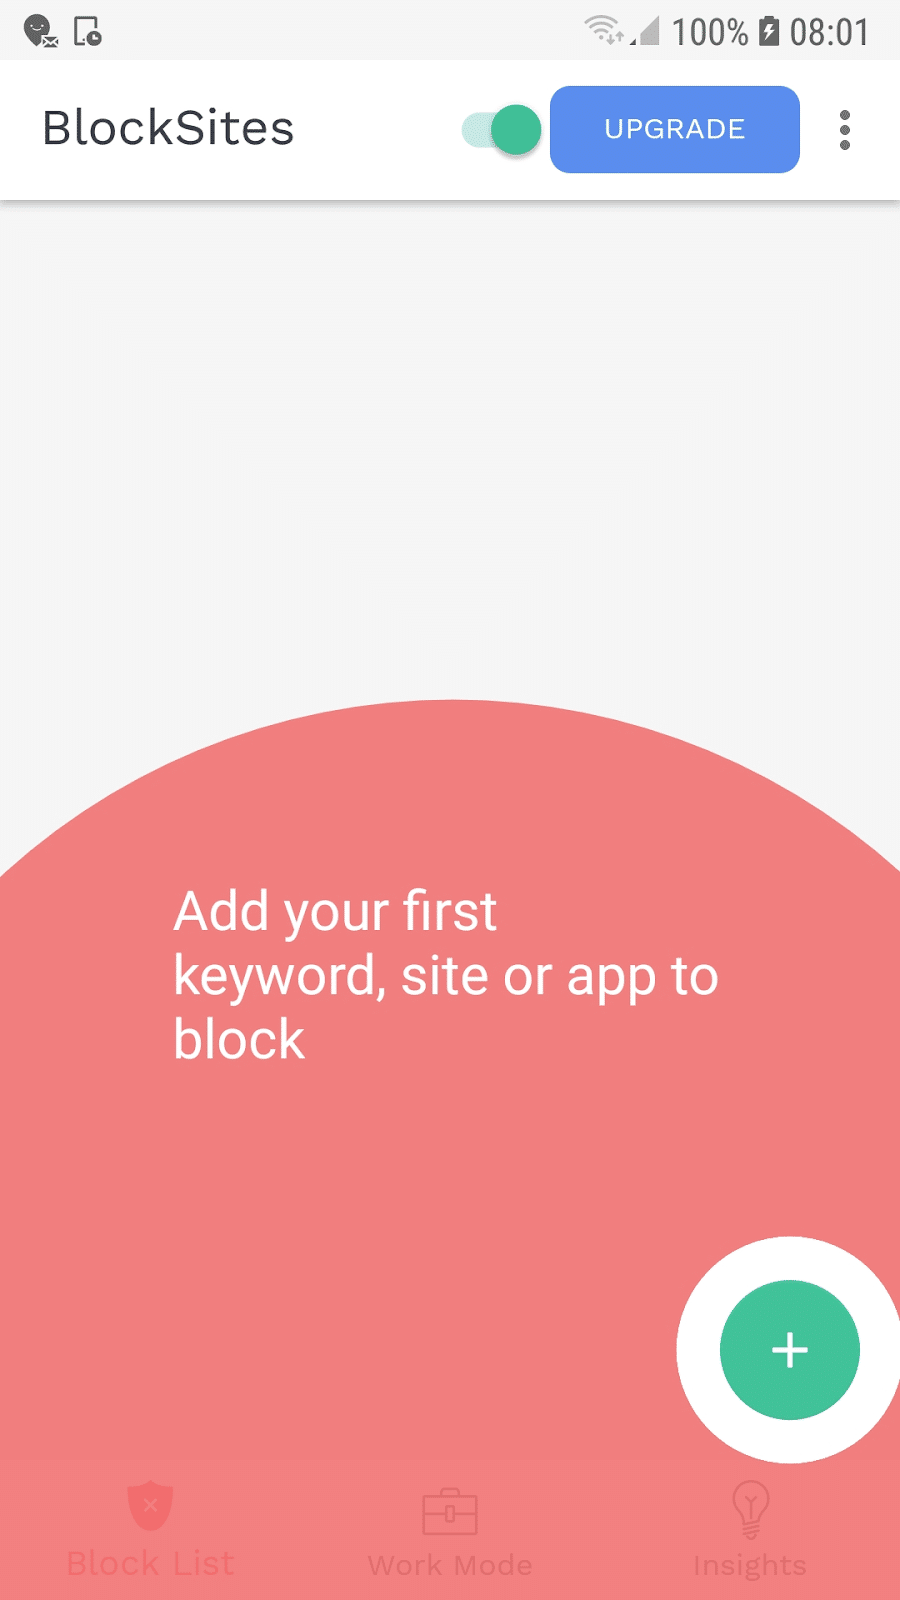 blocksite app block first site